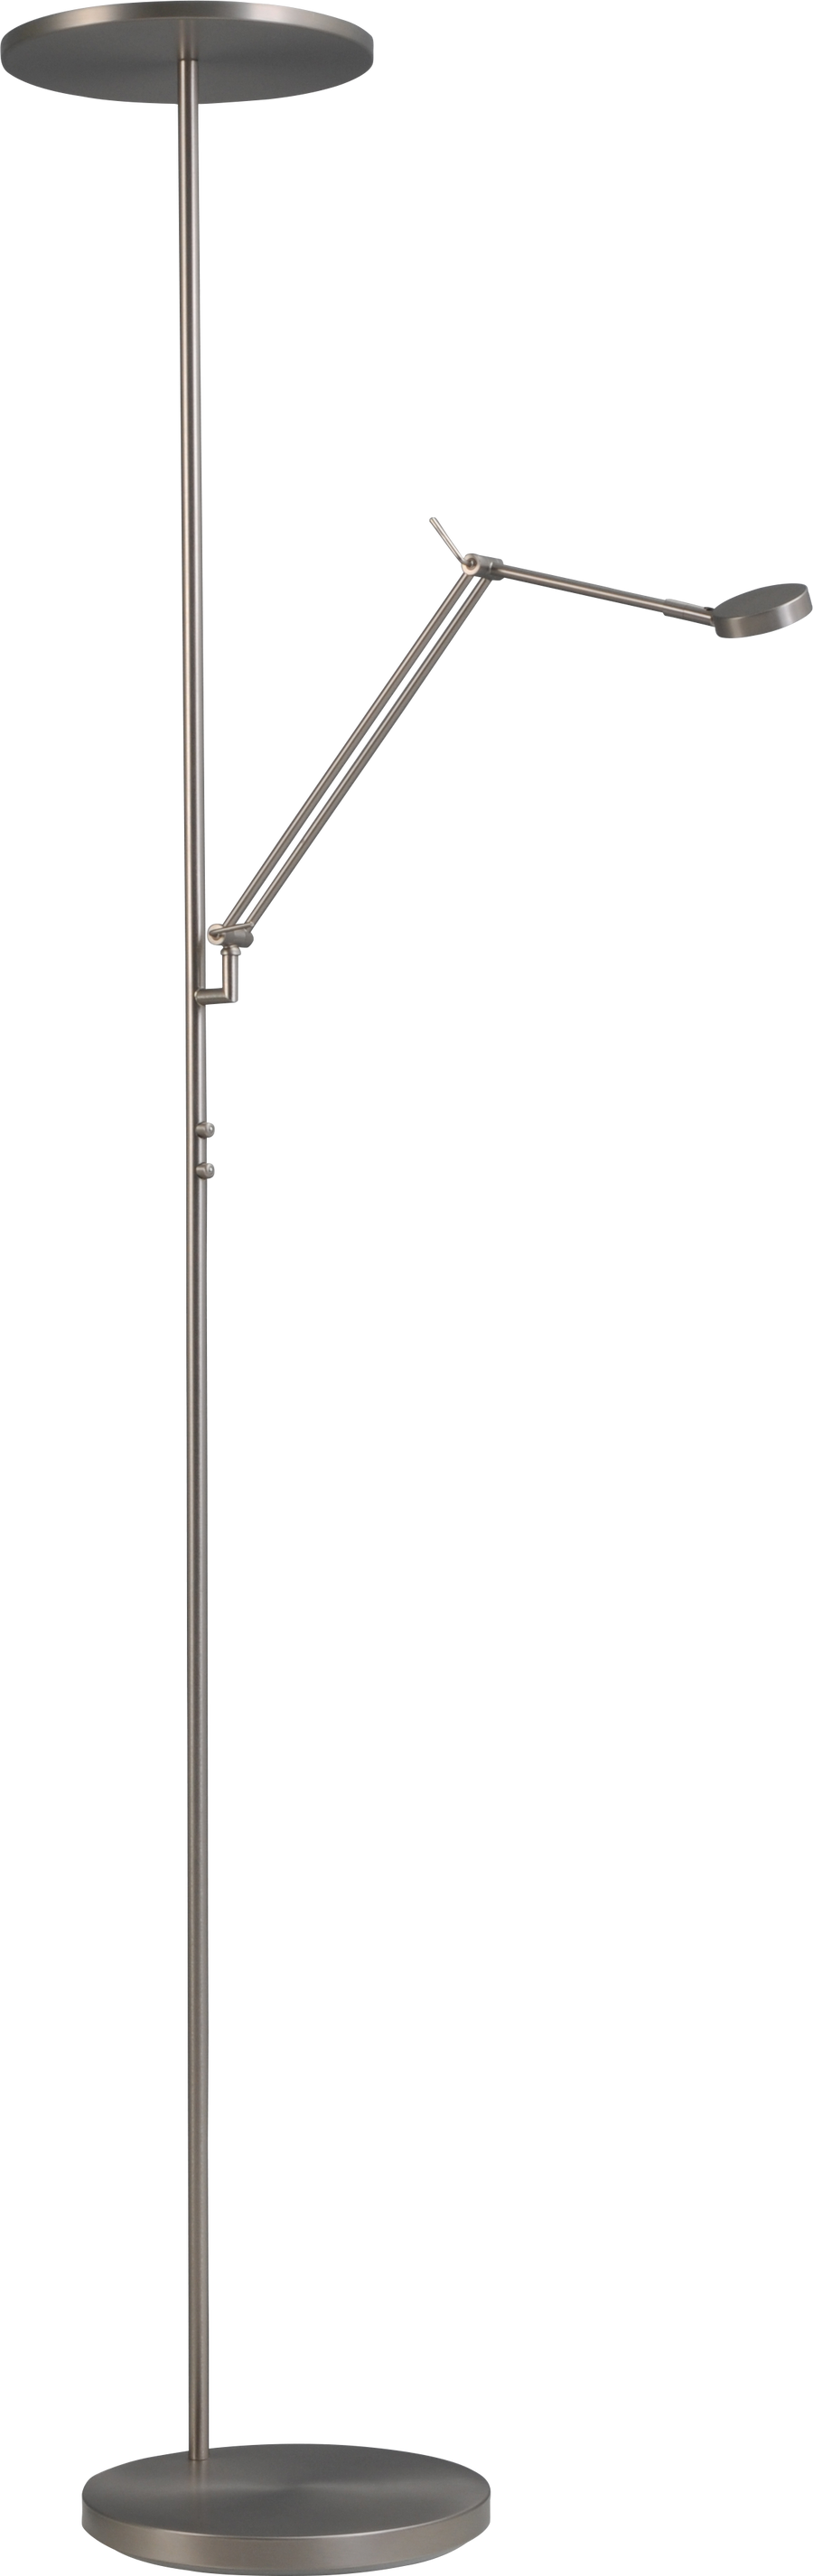 Vloerlamp Denia 2 LED Masterlight 1081-37